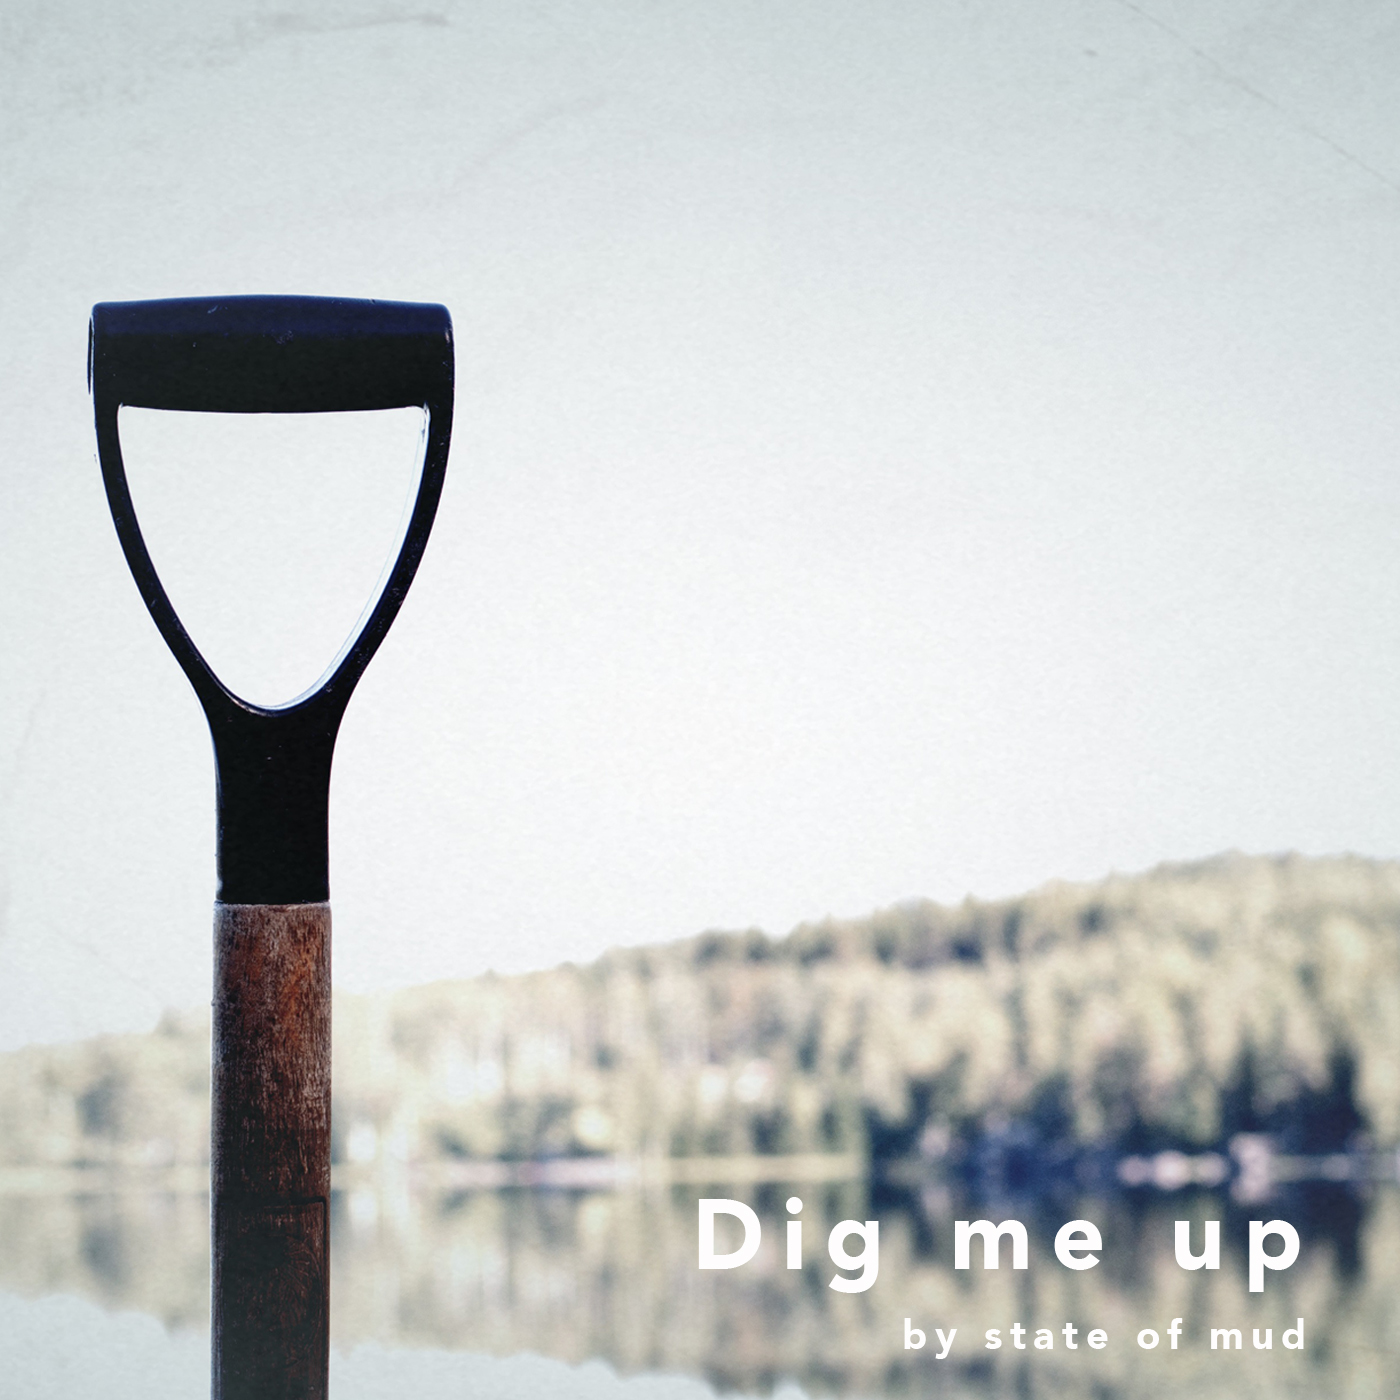 Dig me up